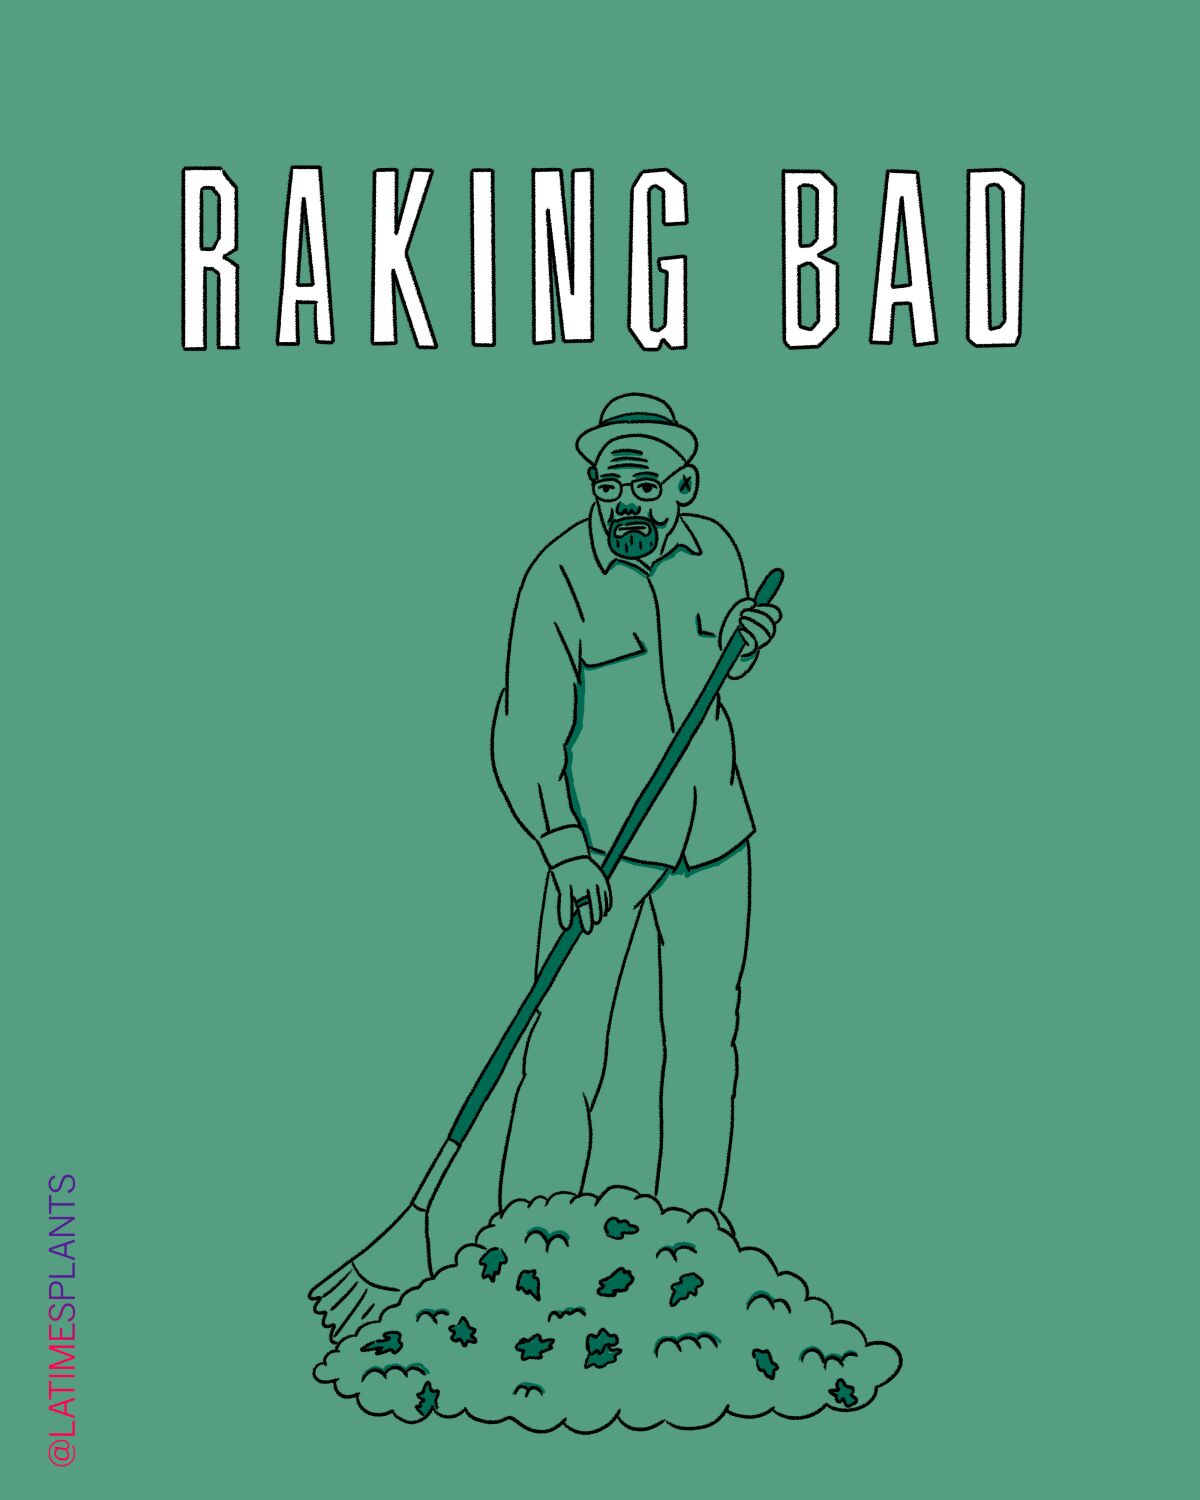 Raking bad